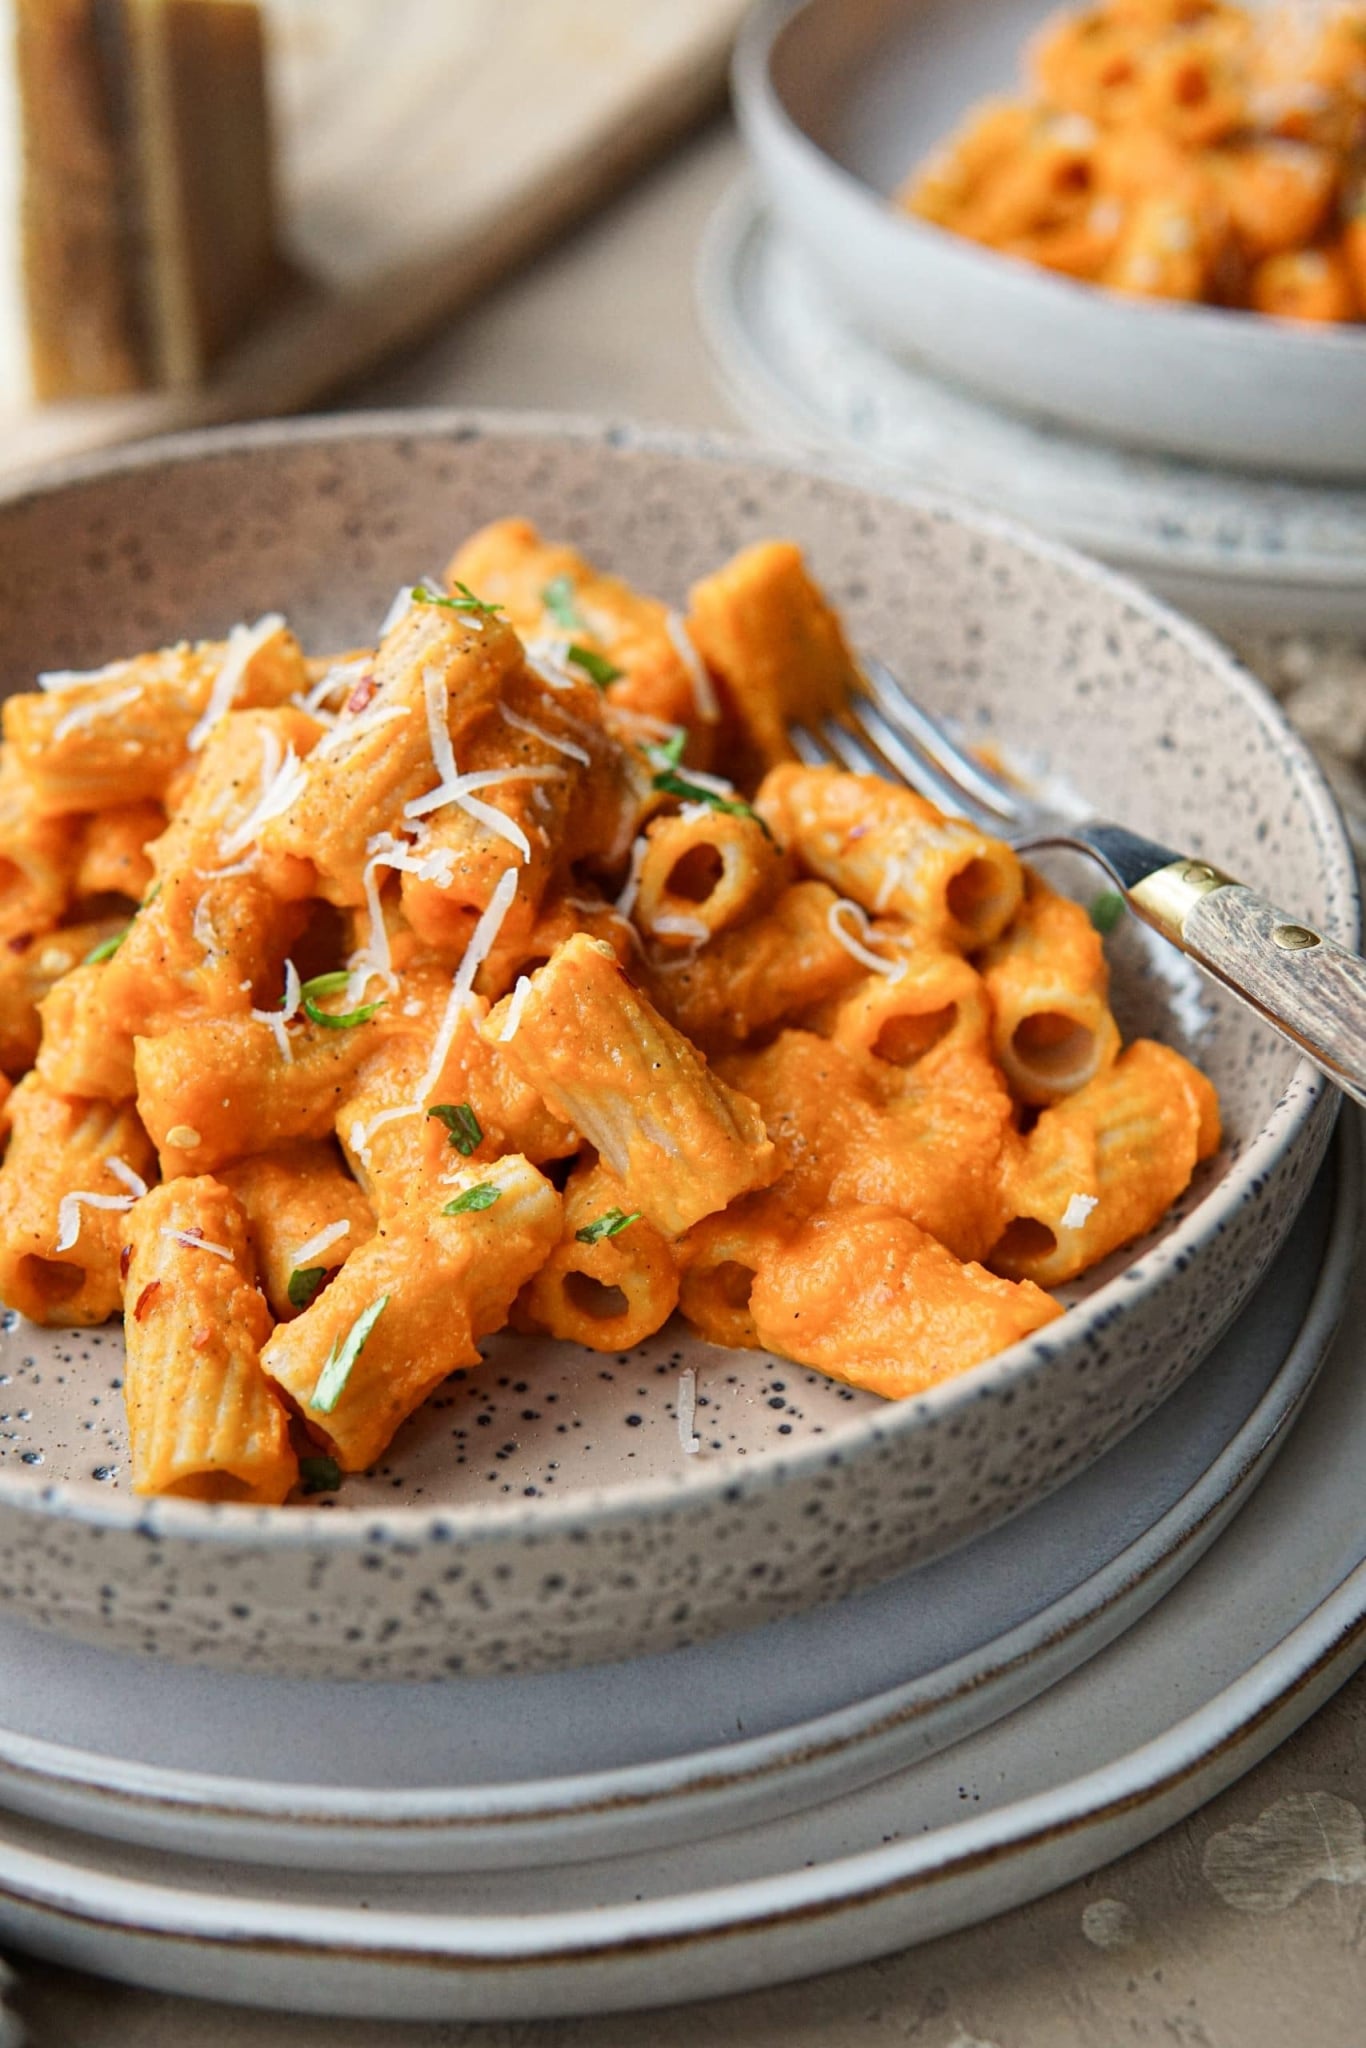 Recept voor vegetarische pasta met pompoensaus